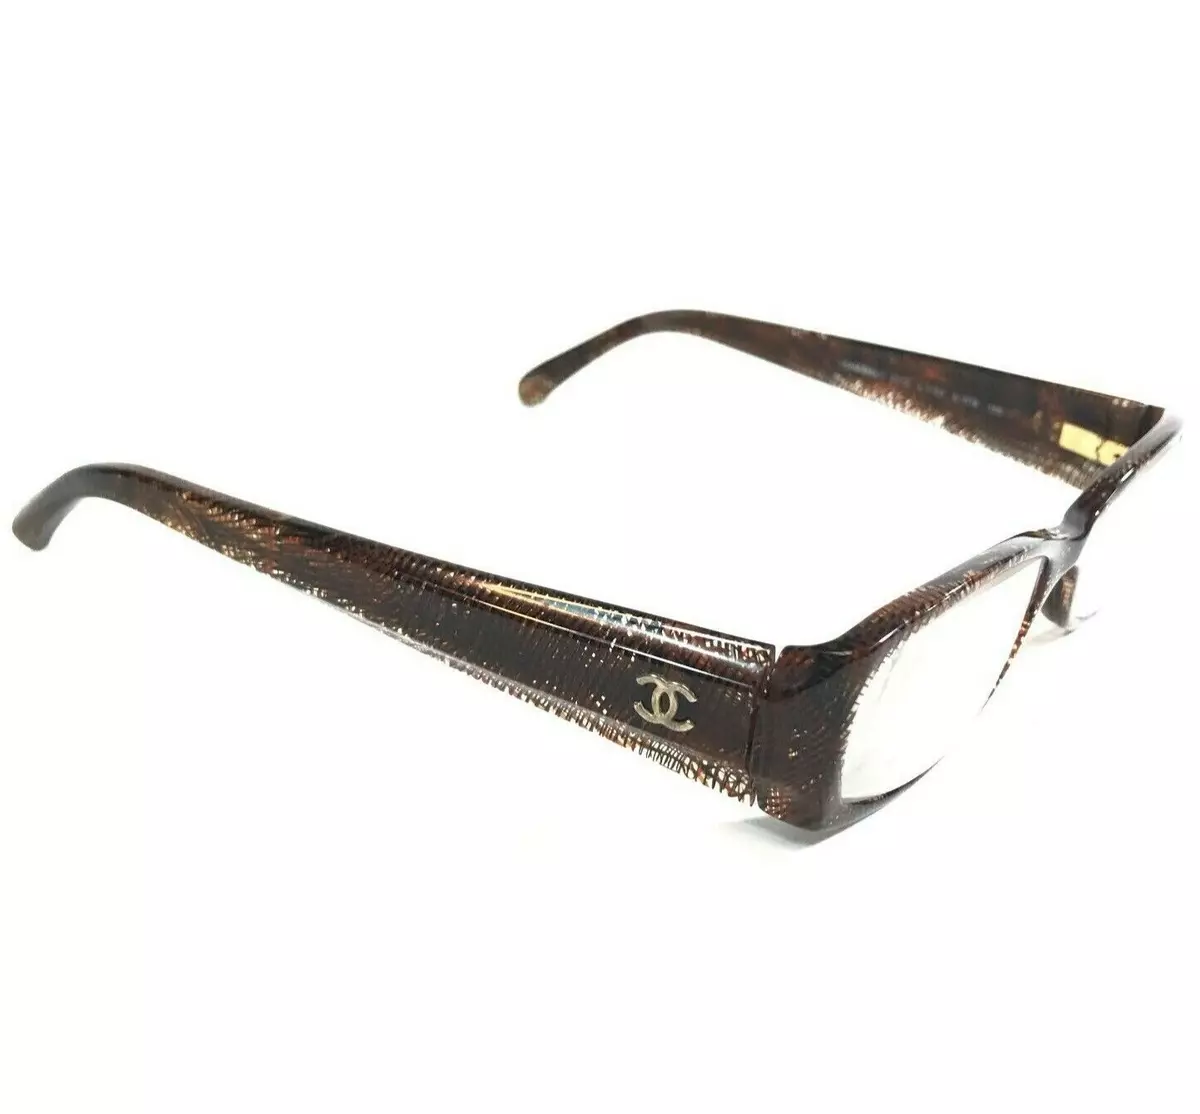 Chanel Eyeglasses Frames 3173 c.1123 Clear Brown Rectangular Full Rim  51-16-135